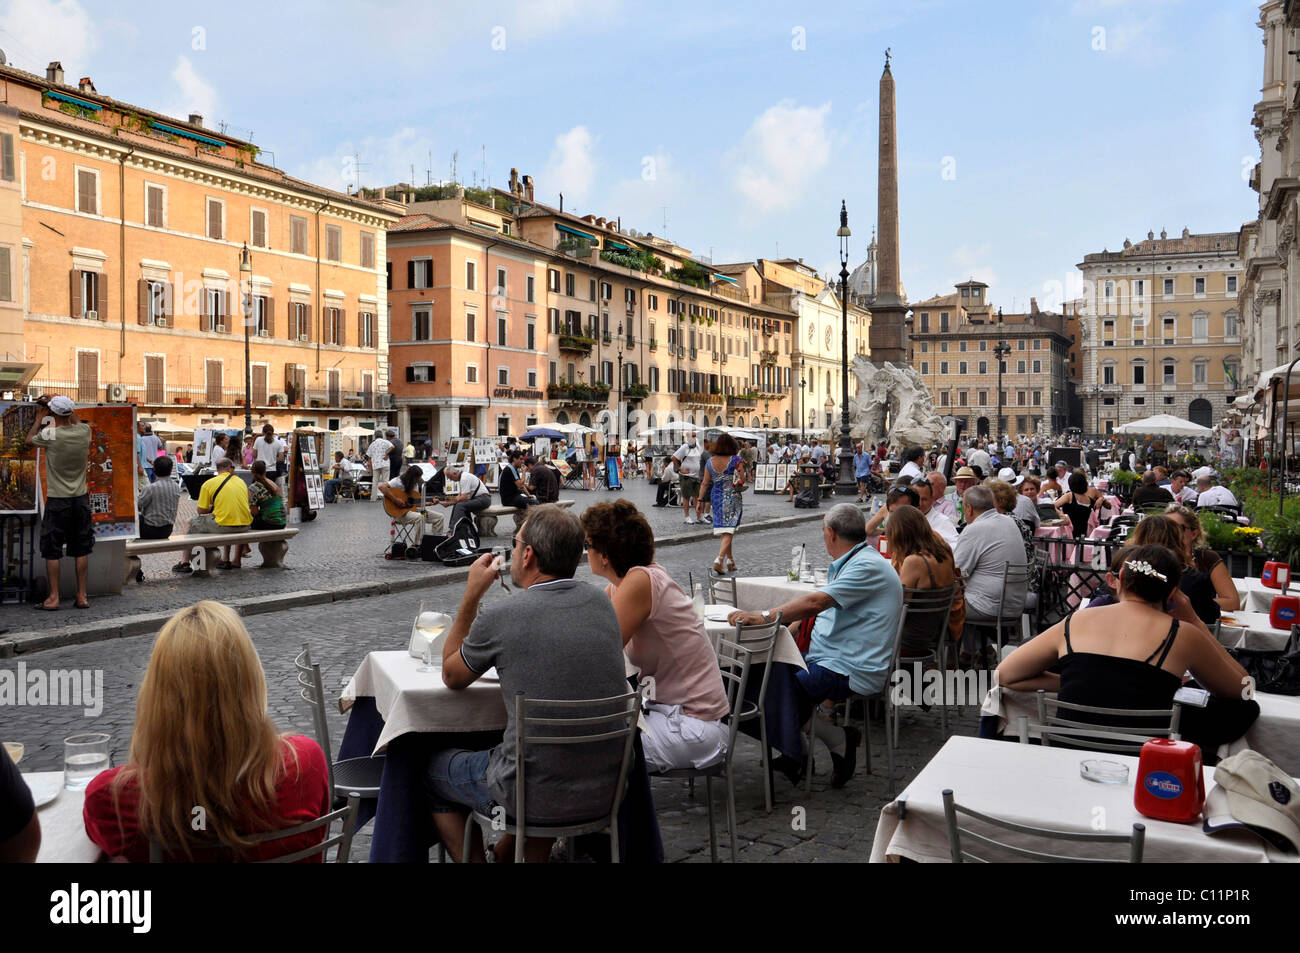 Restaurant, Ristorante, Piazza Navona square, Rome, Lazio, Italy, Europe Stock Photo